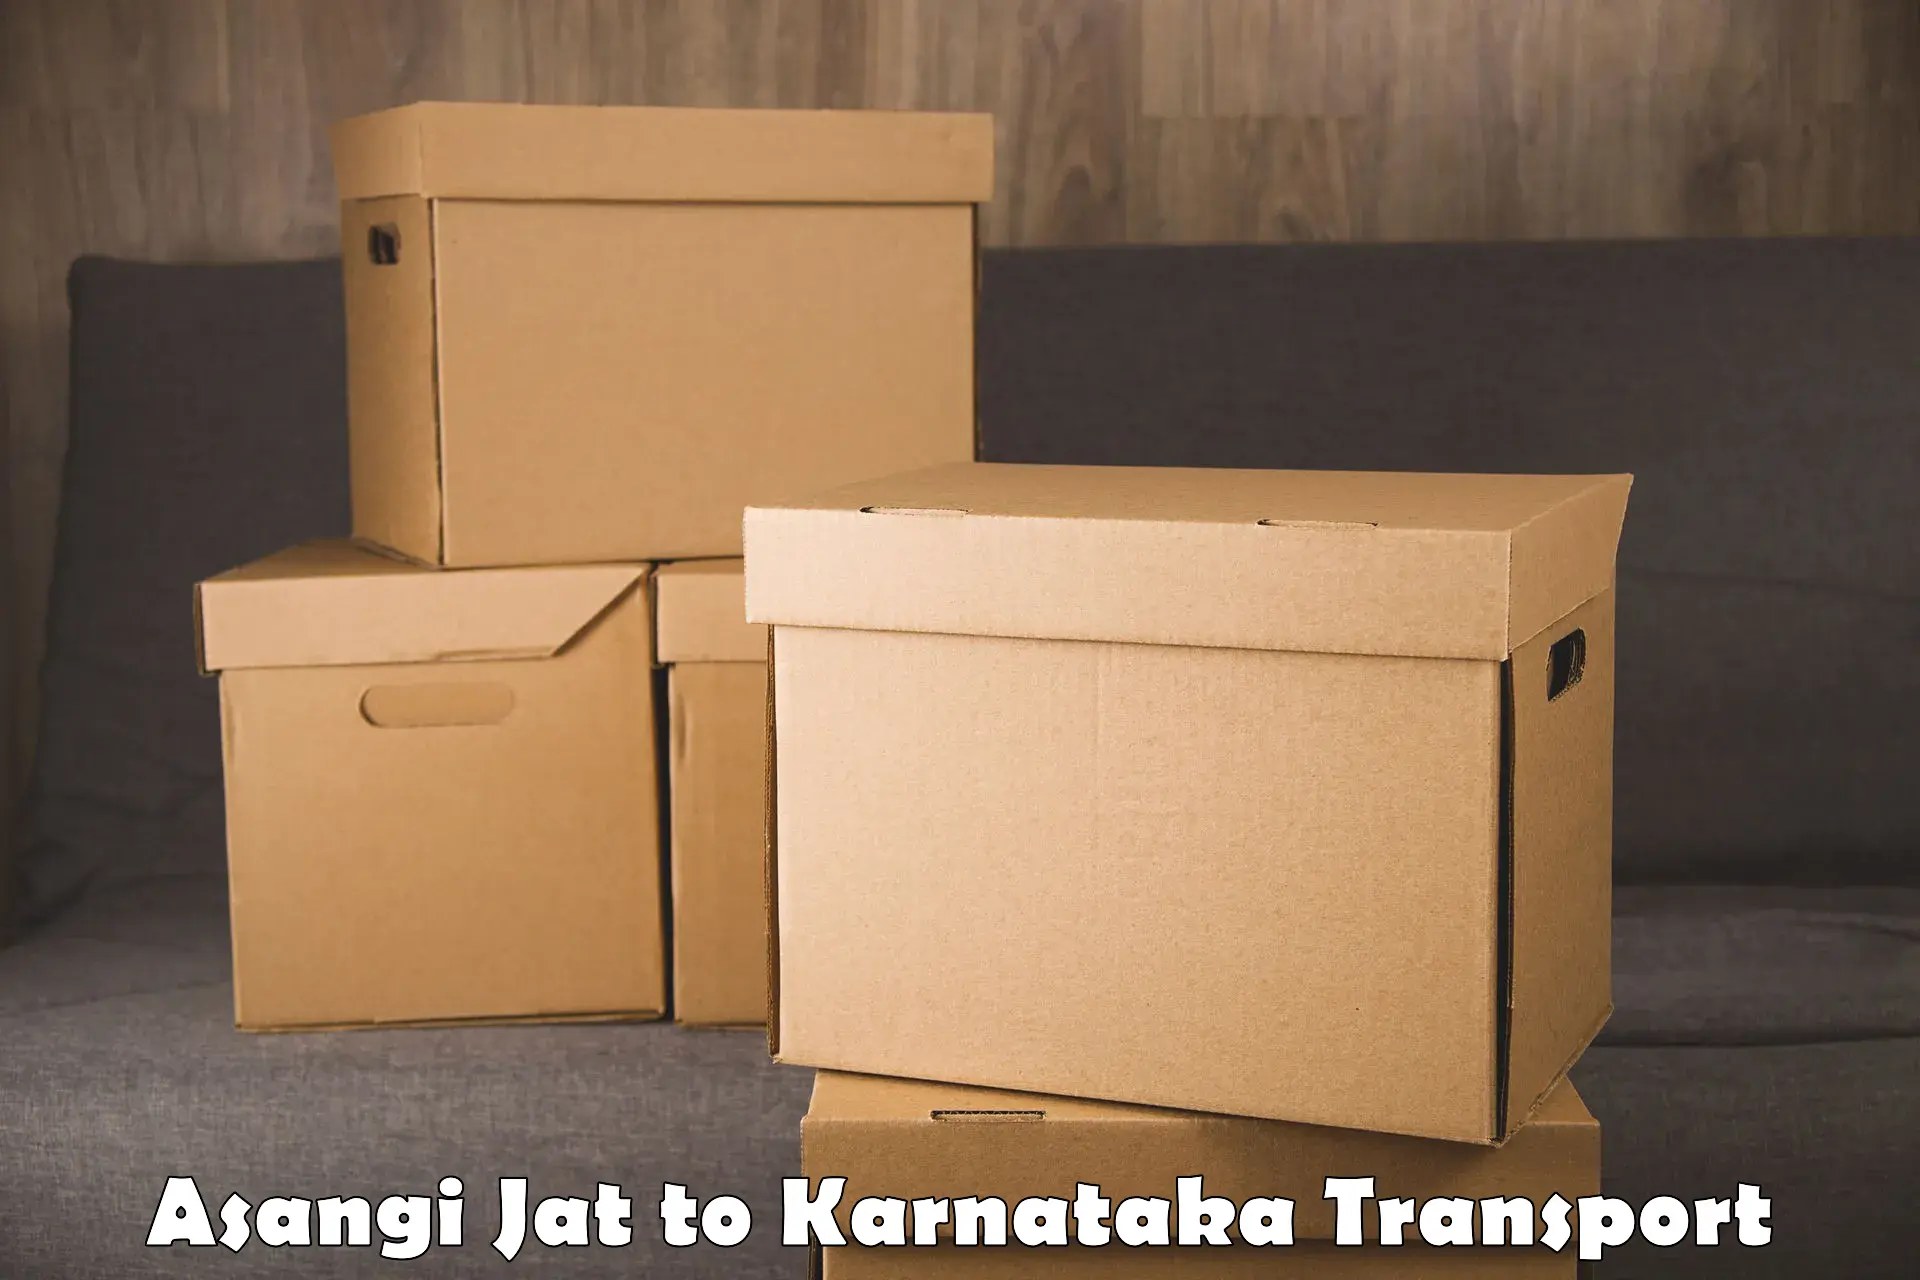 Two wheeler parcel service Asangi Jat to Karnataka